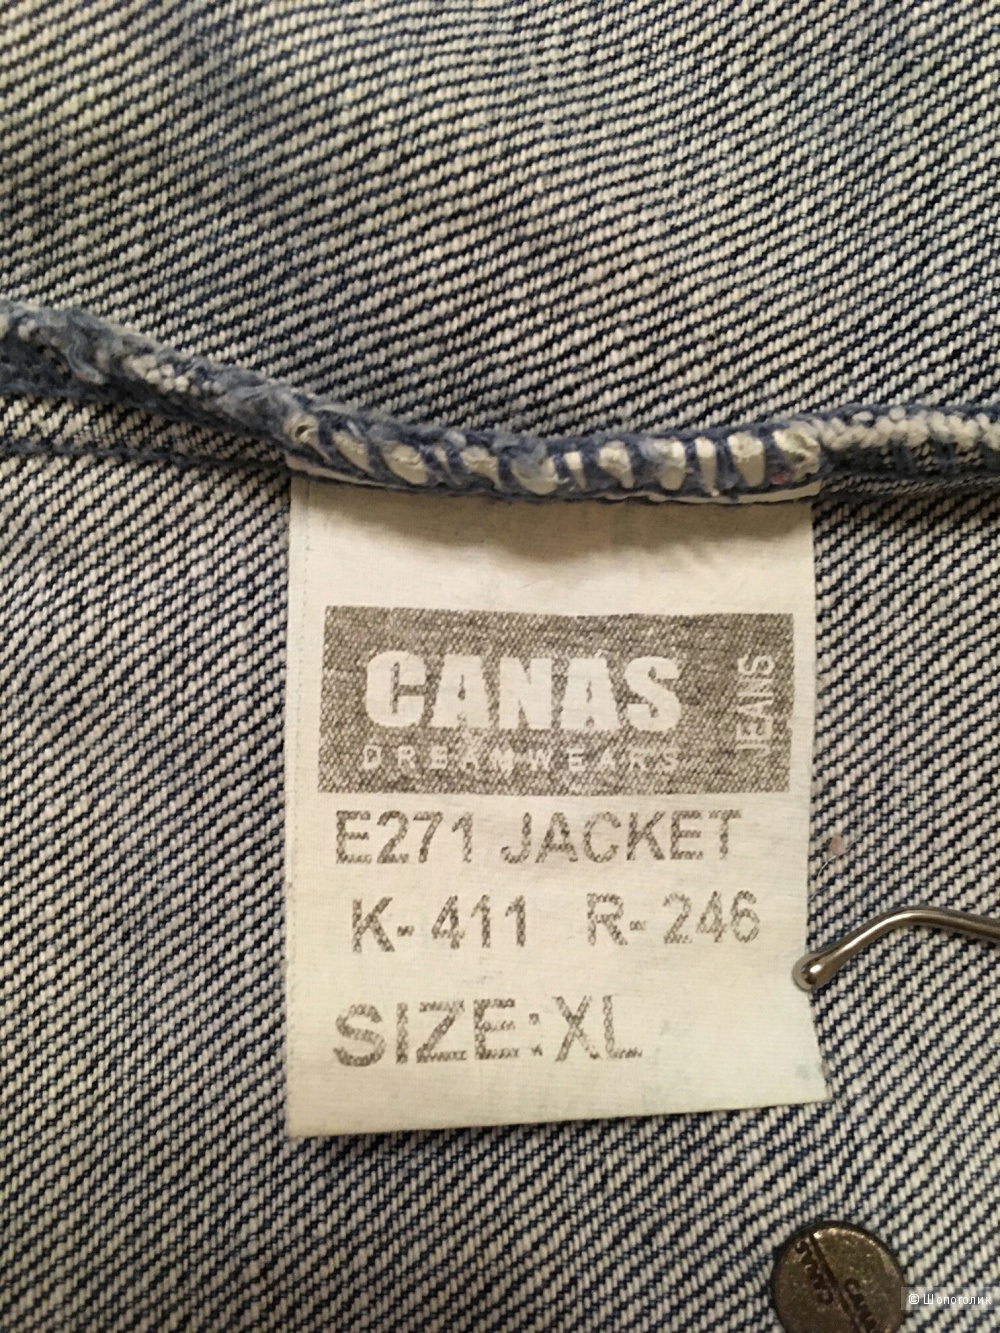 Джинсовая куртка Canas. Размер Xl.